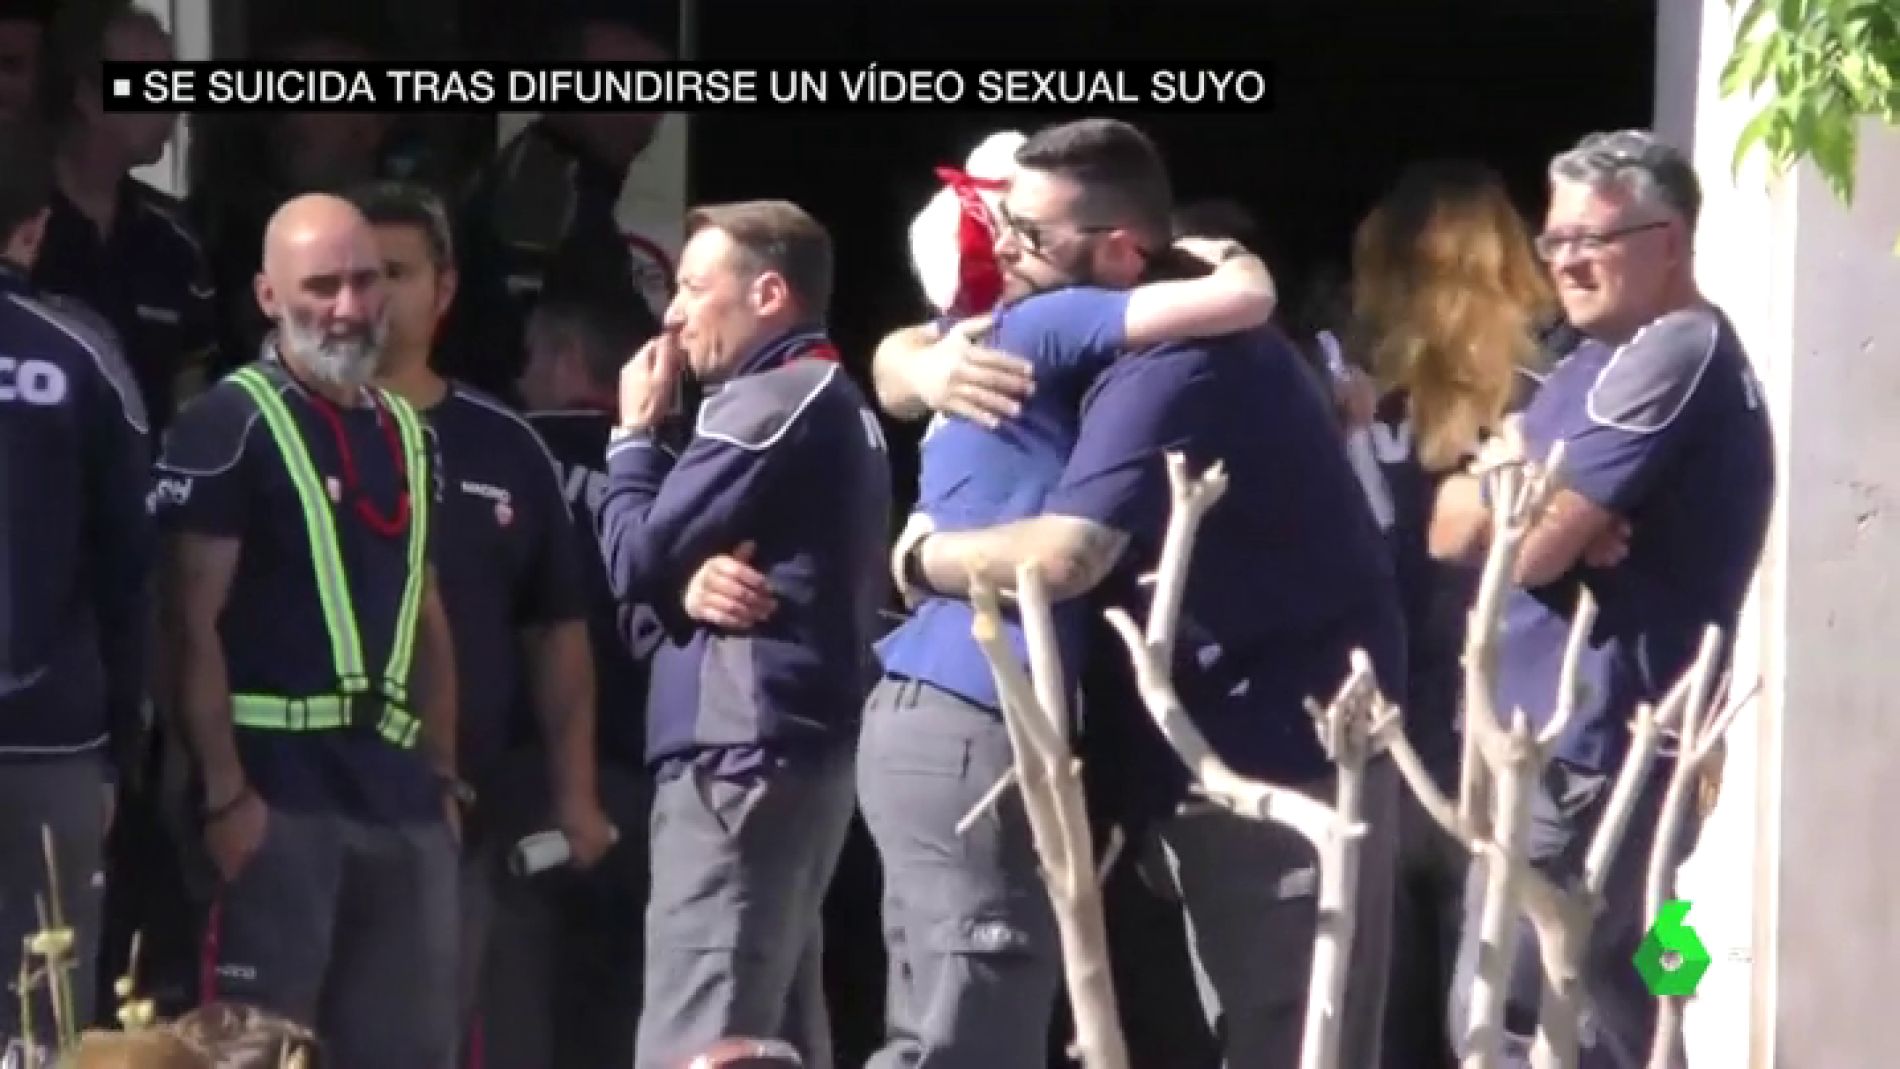 Una madre se suicida en Madrid tras difundirse un vídeo sexual suyo entre sus compañeros de trabajo en Iveco imagen